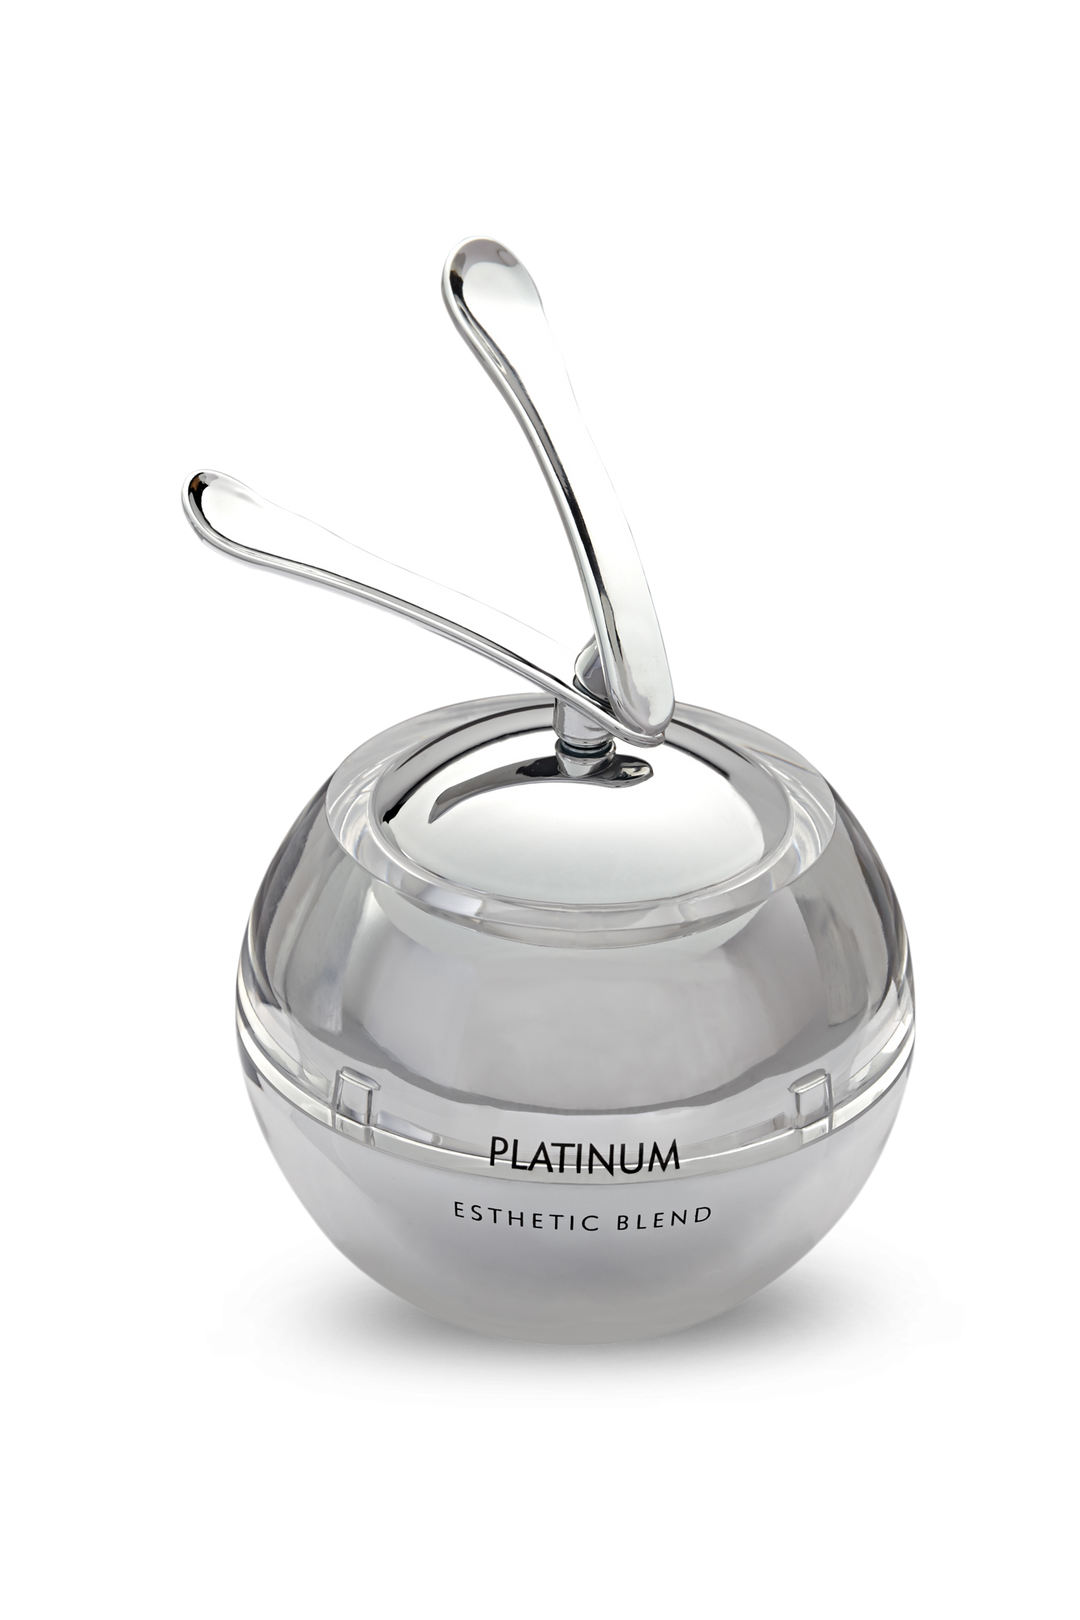 Best Face and Body Platinum Cream- Esthetic Blend- Skintrium 